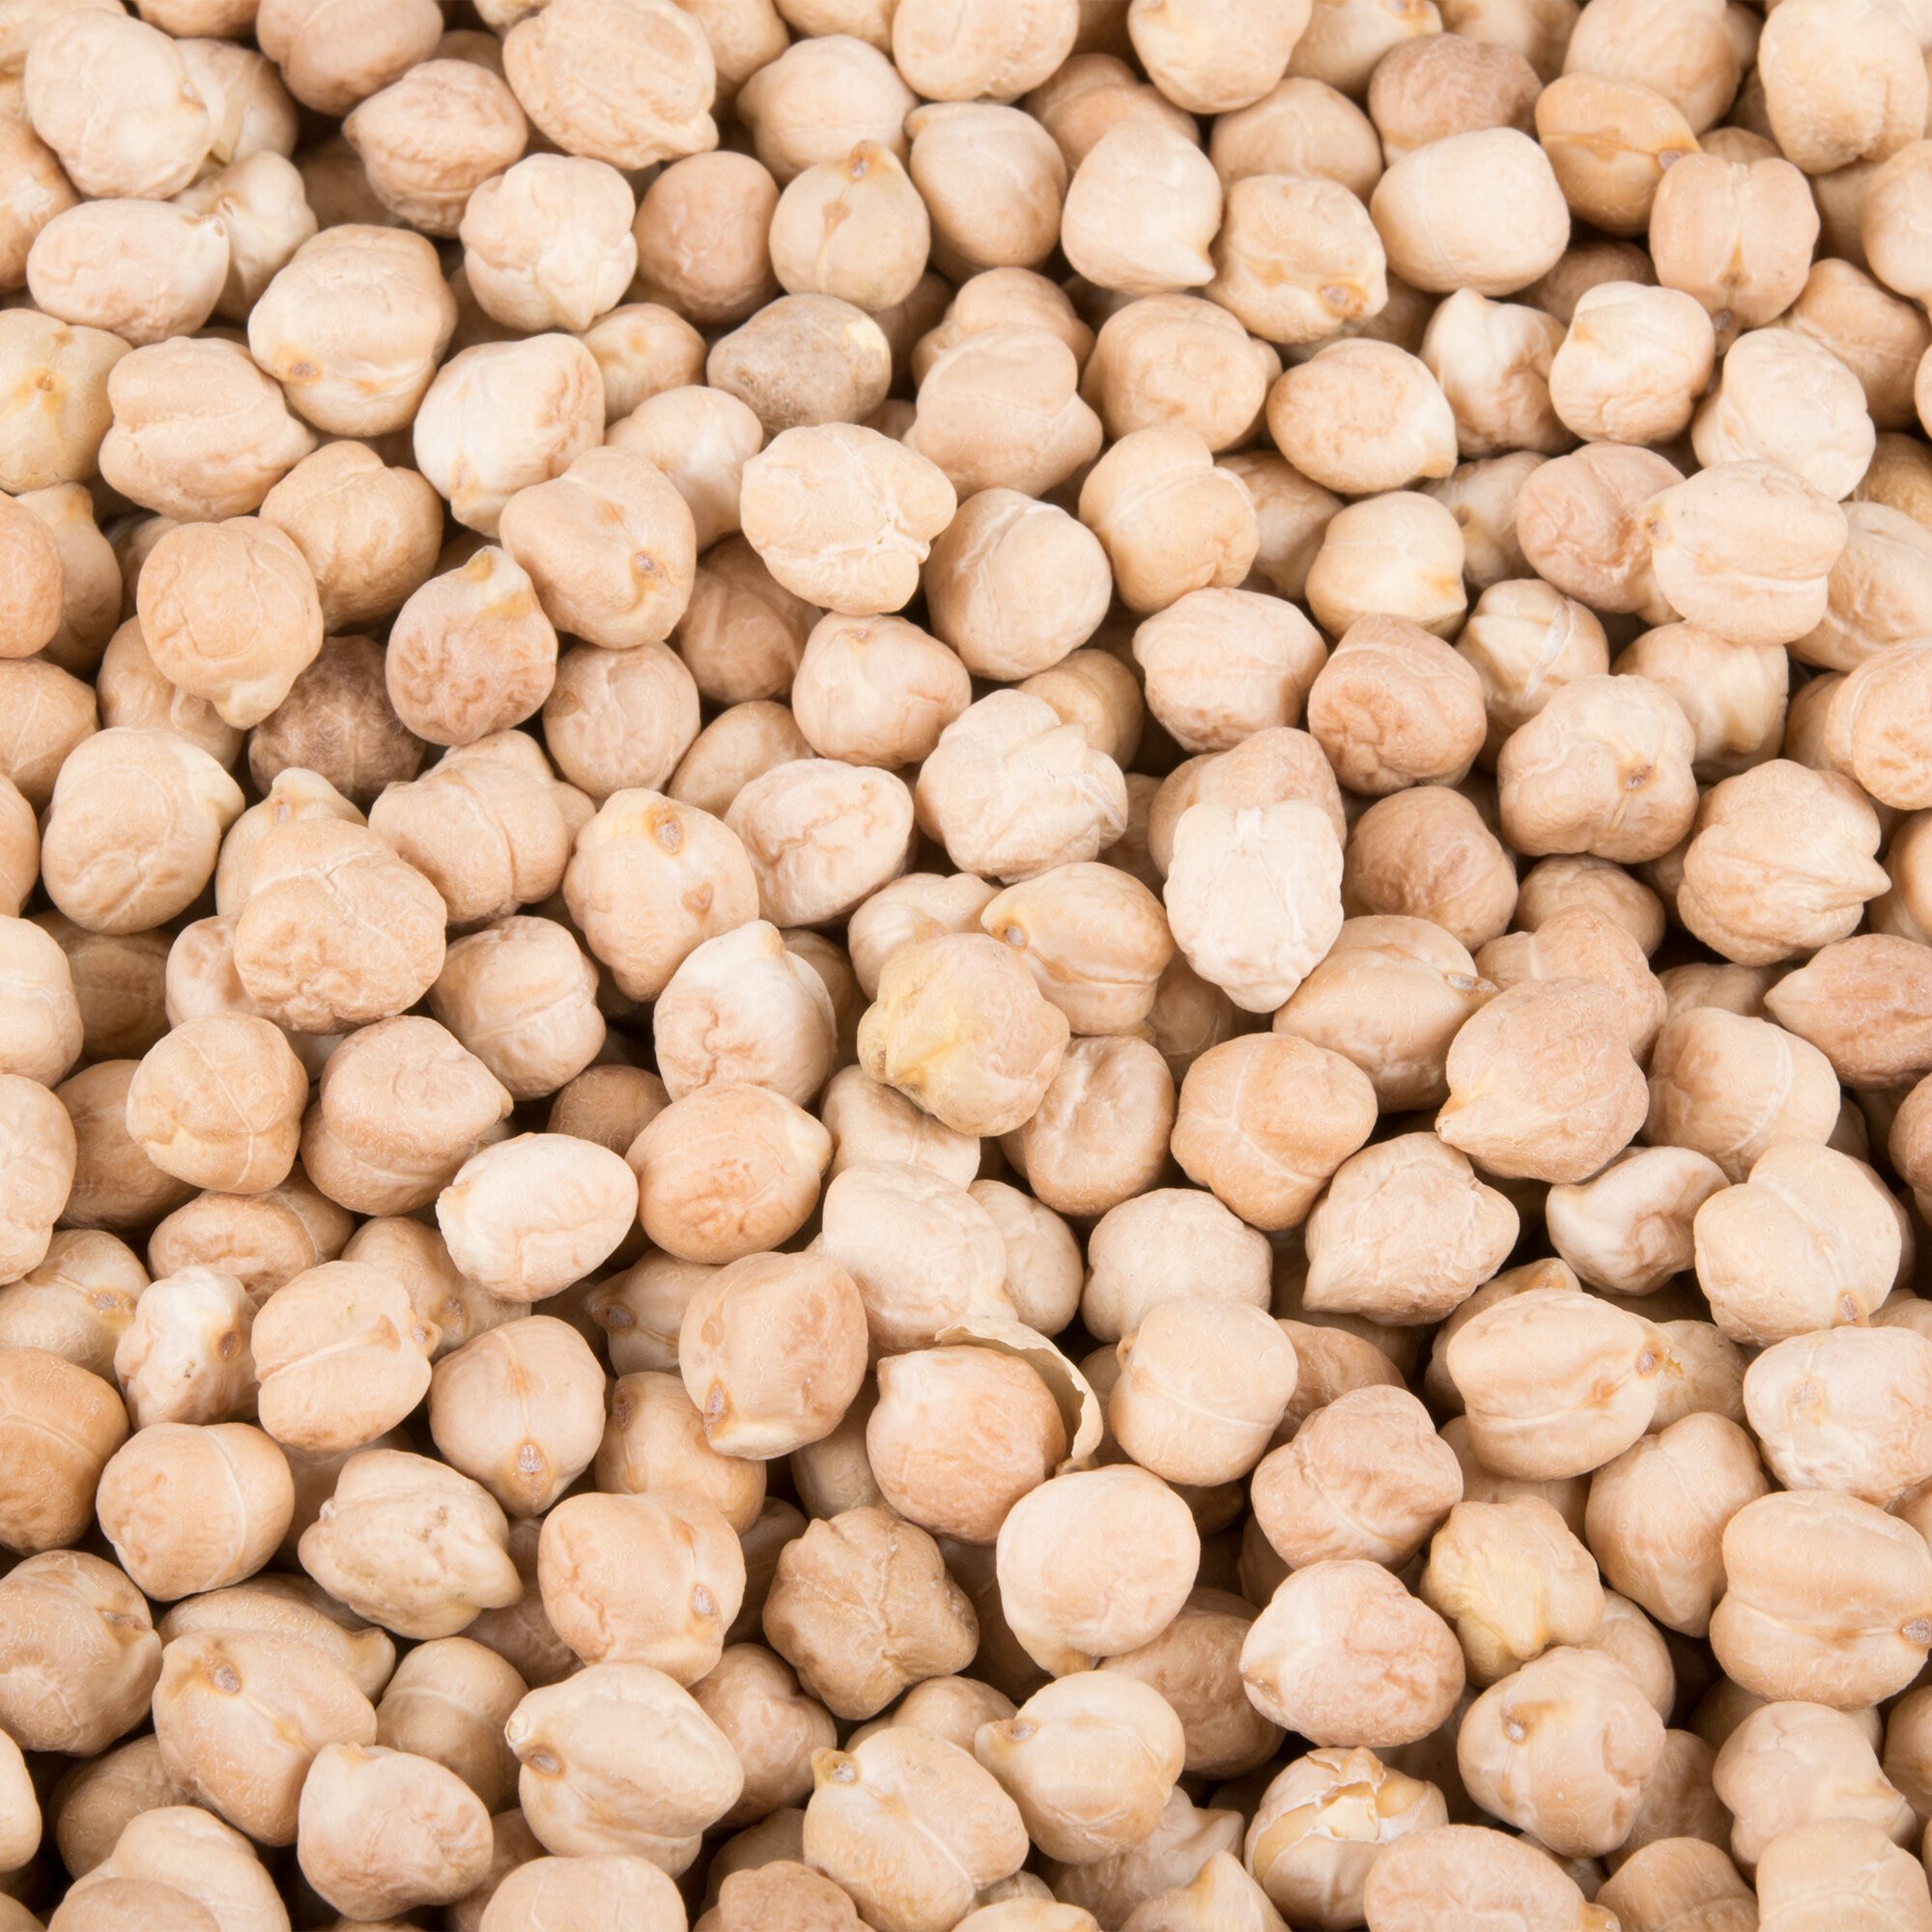 Bulk Chickpeas Dried Garbanzo Beans Lb Bag